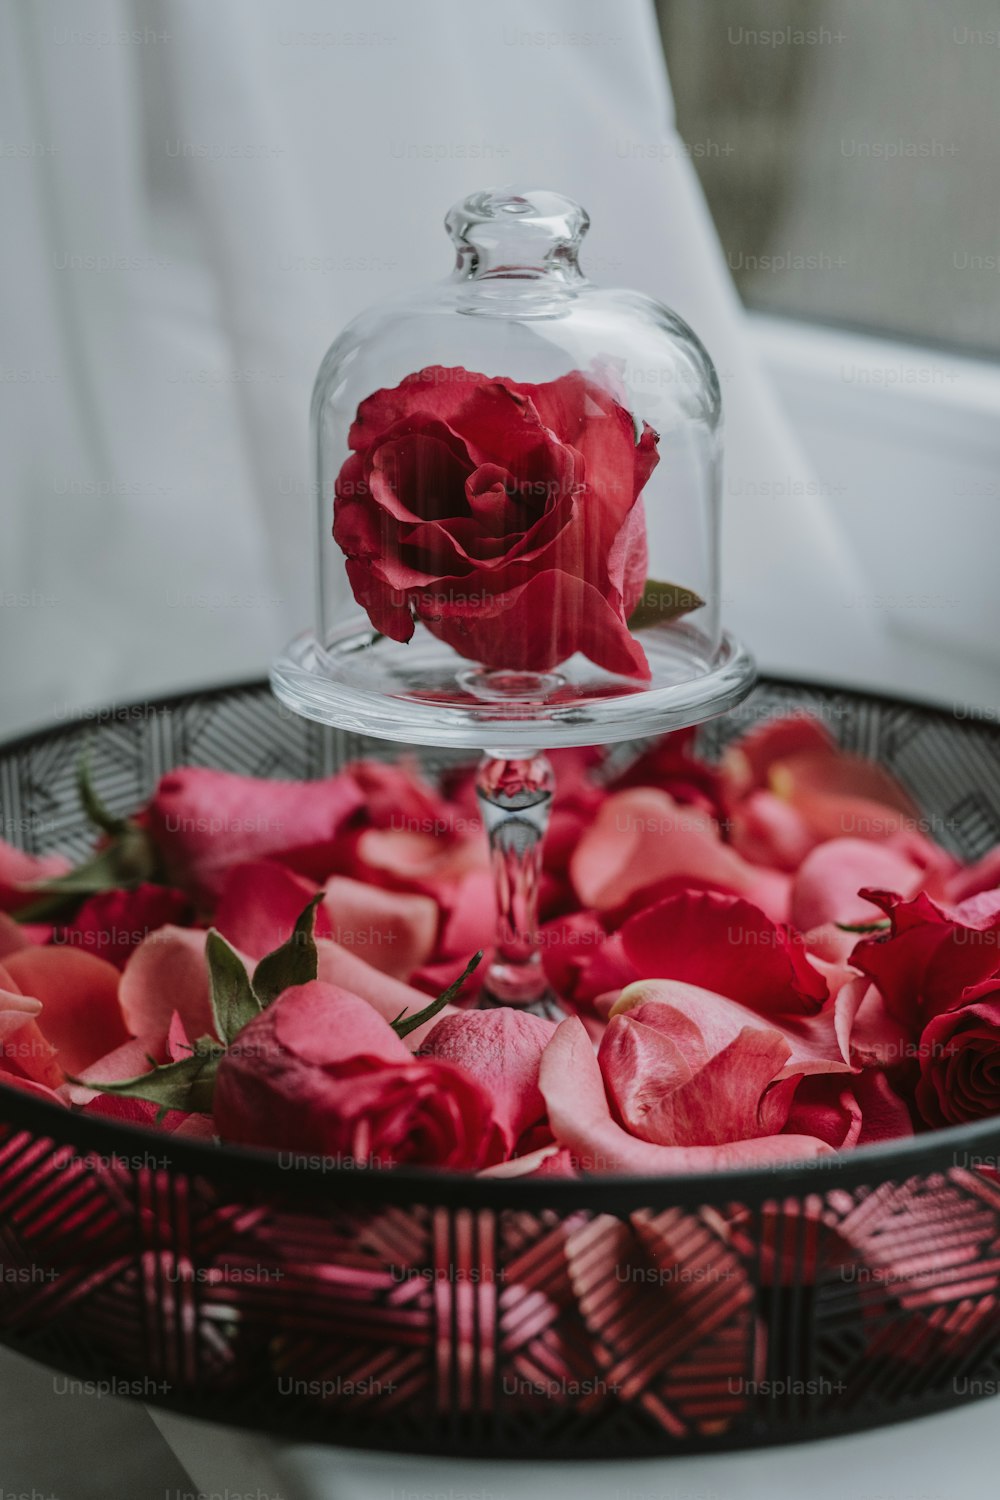 une cloche en verre avec une rose rouge dedans